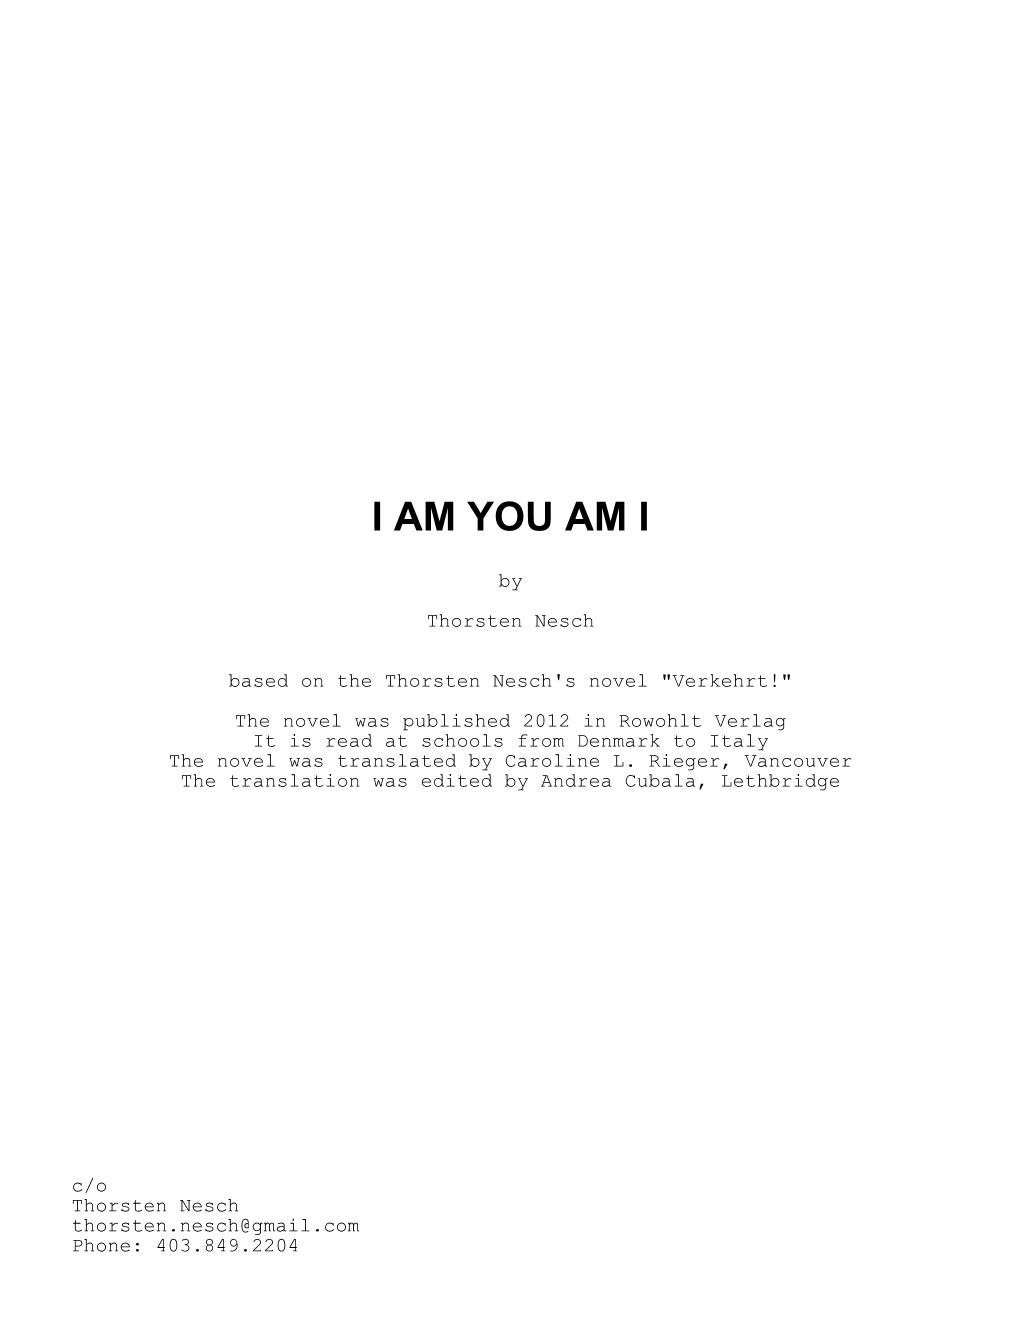 I AM YOU AM I by Thorsten Nesch